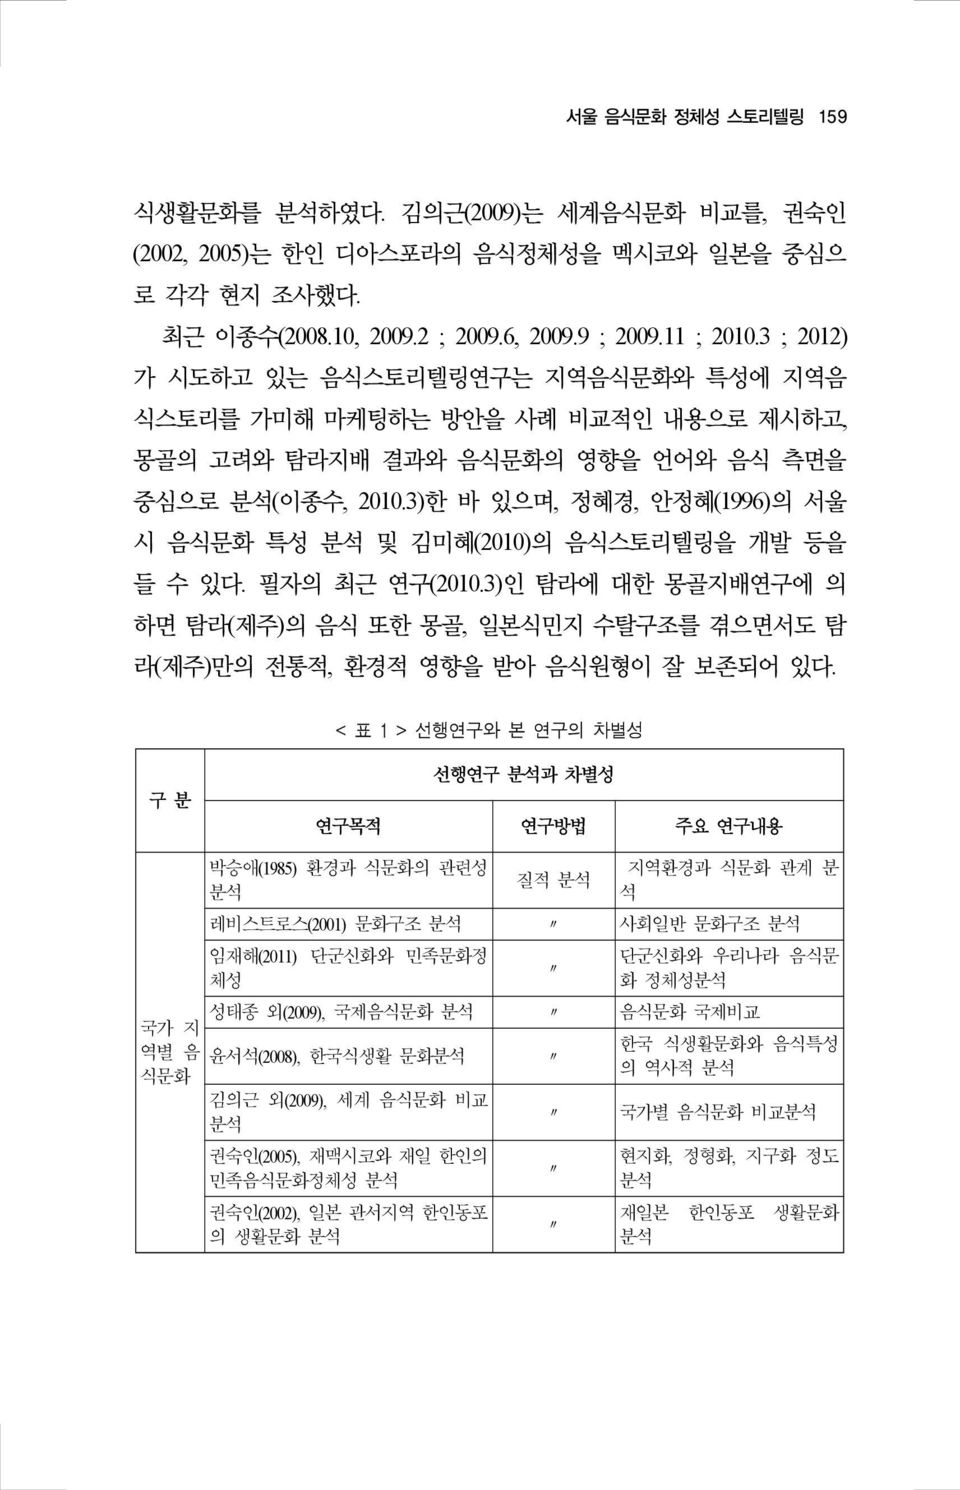 3)한 바 있으며, 정혜경, 안정혜(1996)의 서울 시 음식문화 특성 분석 및 김미혜(2010)의 음식스토리텔링을 개발 등을 들 수 있다. 필자의 최근 연구(2010.3)인 탐라에 대한 몽골지배연구에 의 하면 탐라(제주)의 음식 또한 몽골, 일본식민지 수탈구조를 겪으면서도 탐 라(제주)만의 전통적, 환경적 영향을 받아 음식원형이 잘 보존되어 있다.